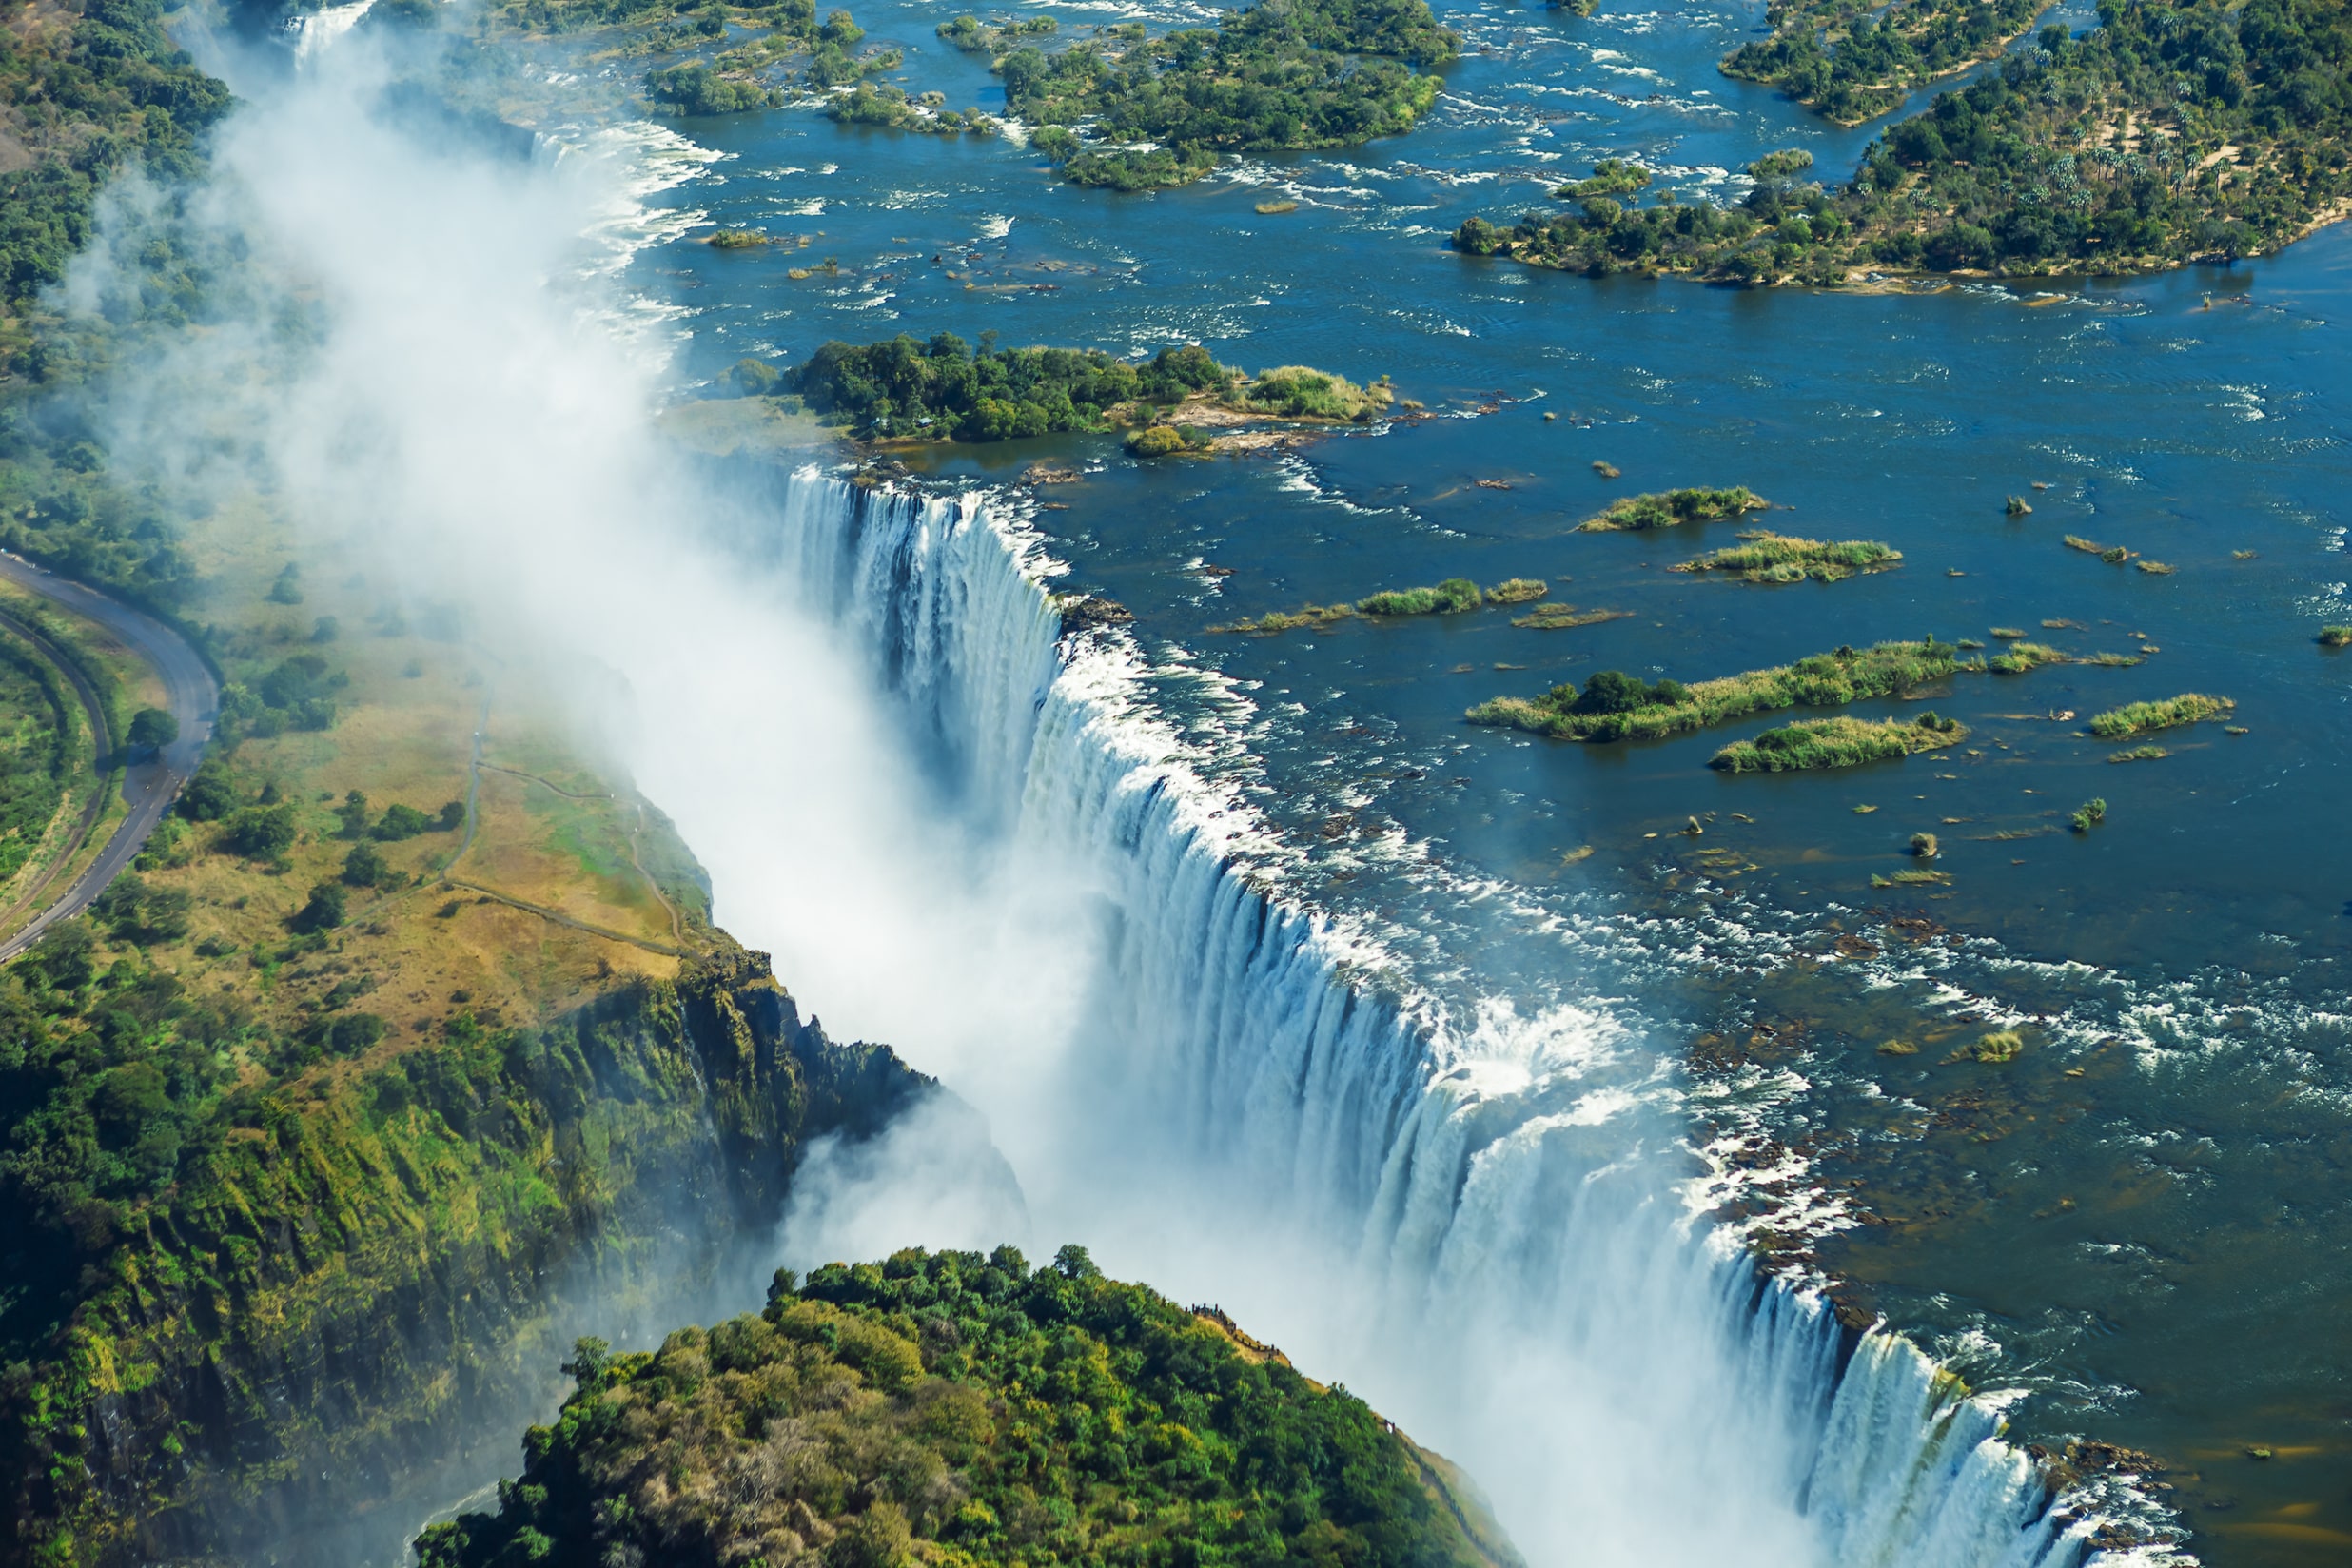 Victoria Falls, Zimbabwe & Zambia